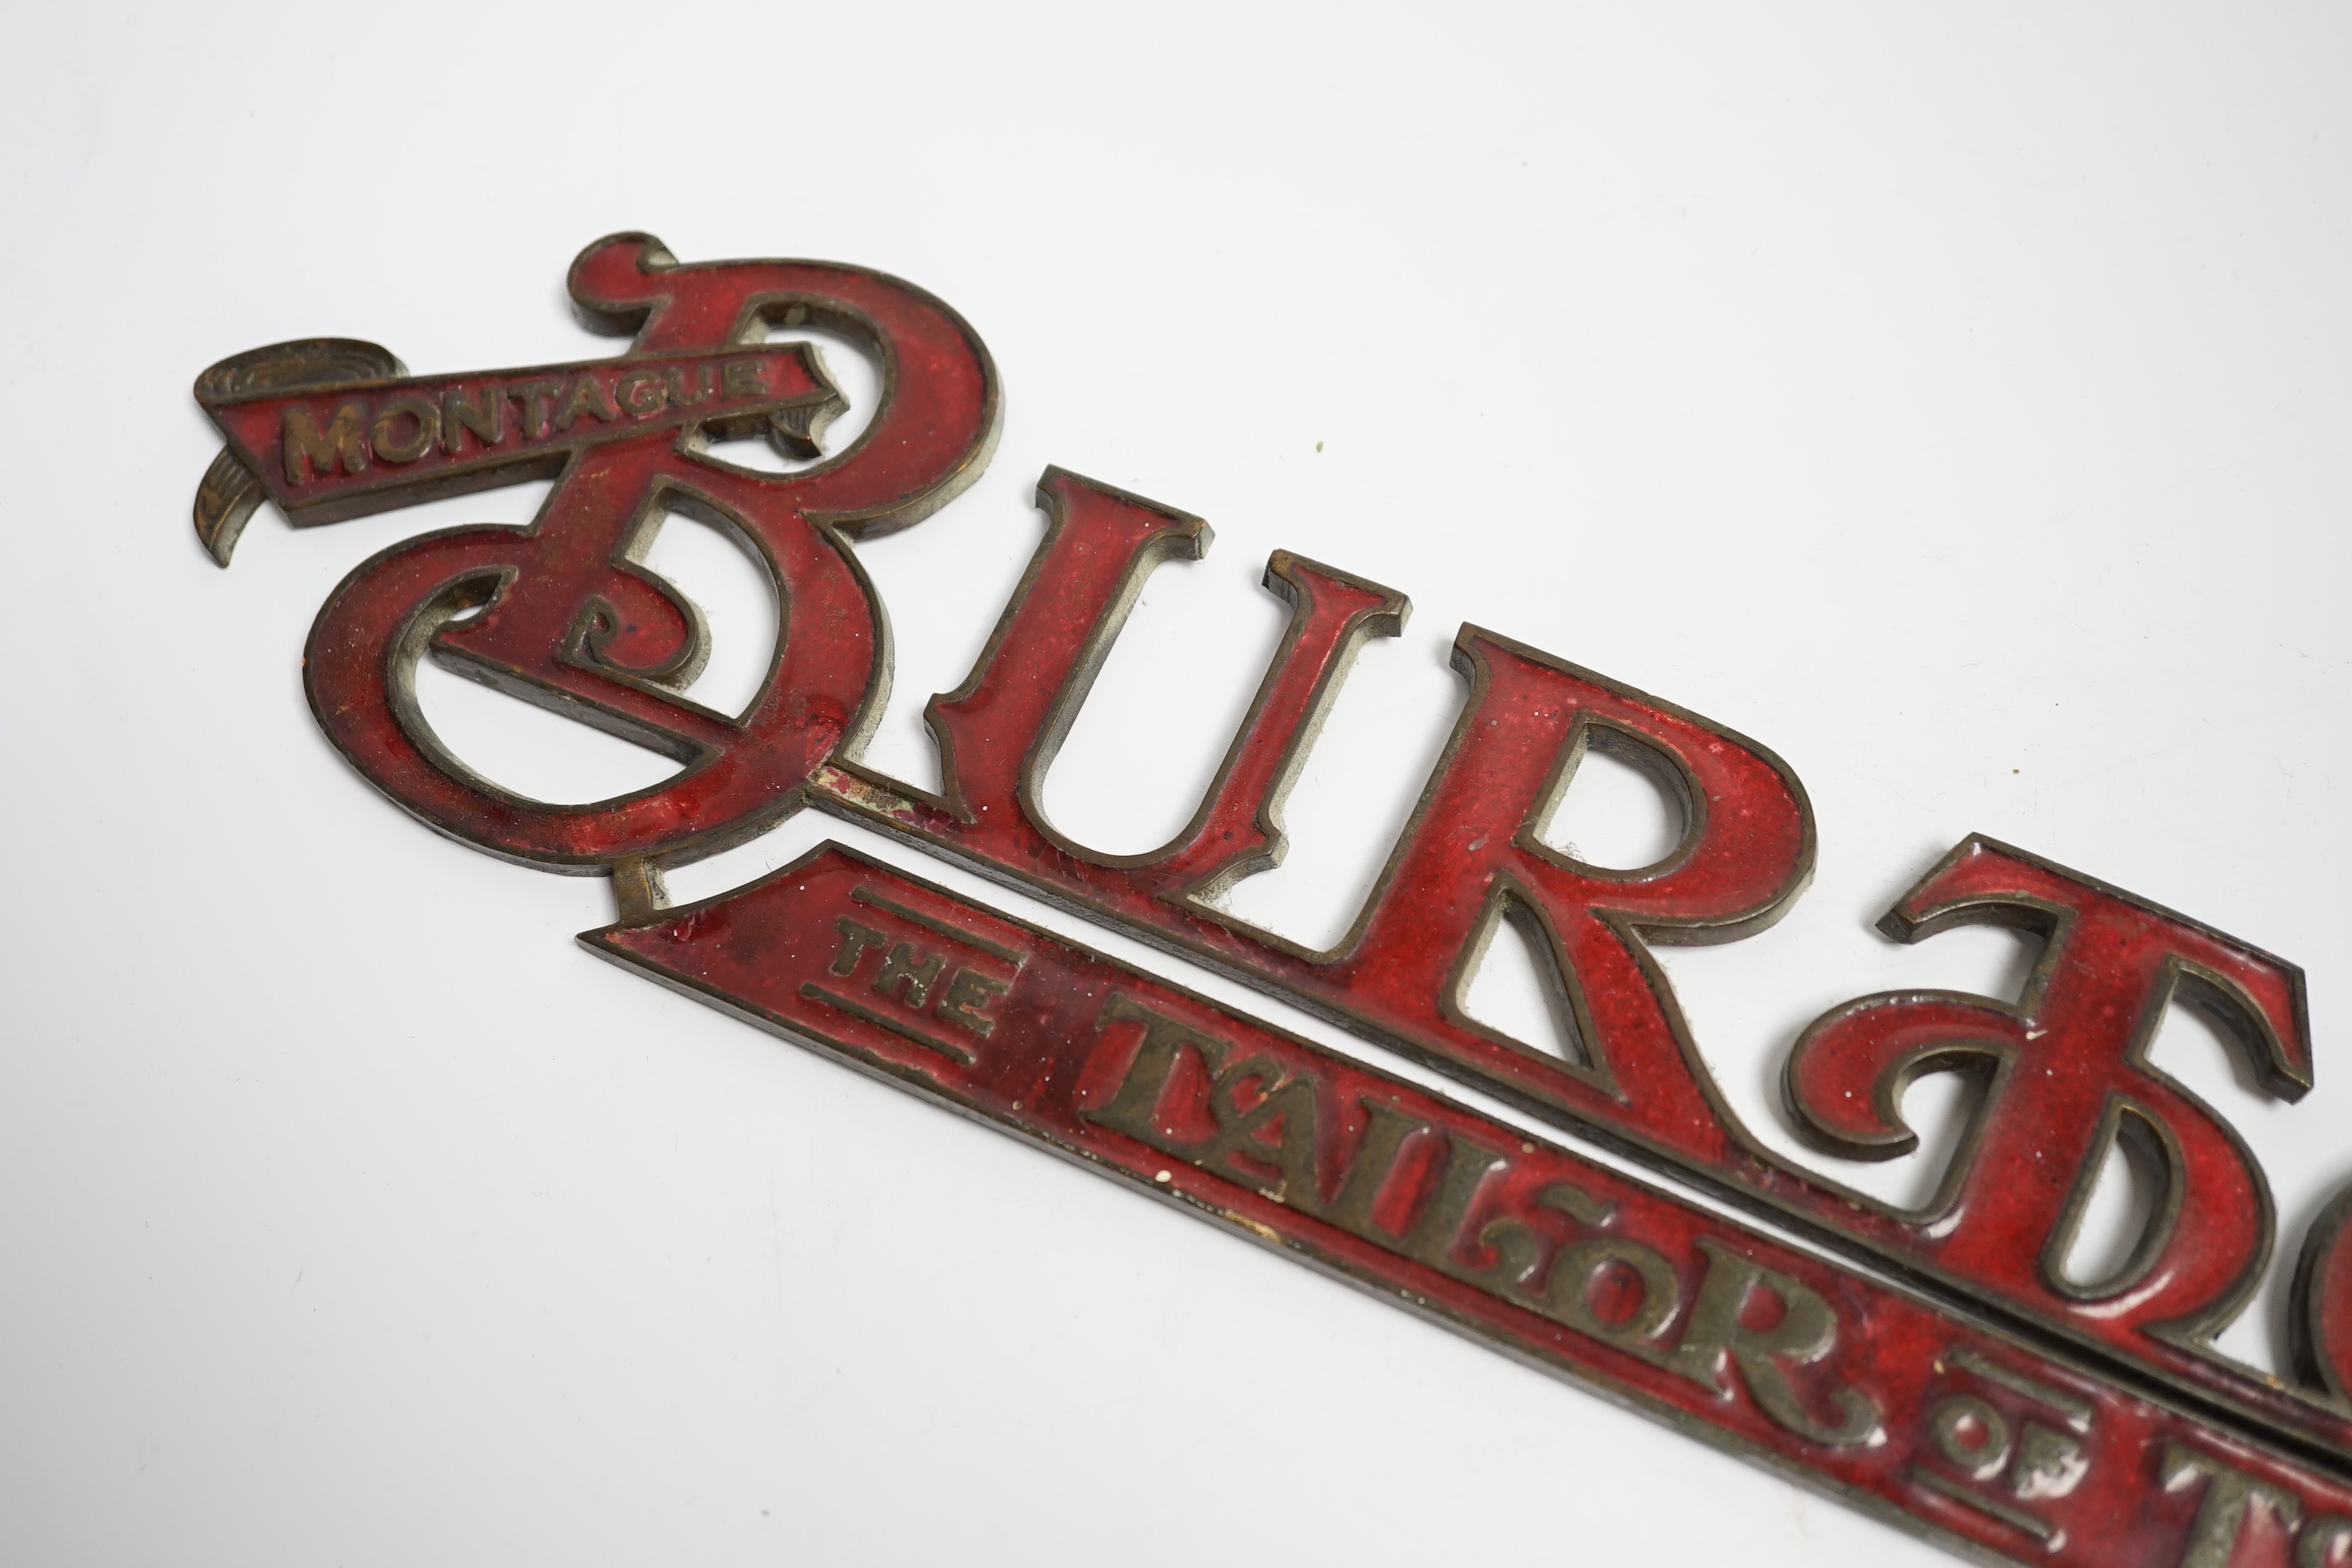 An enamelled bronze 'Montague Burton The Tailor of Taste' shop sign, 41cm wide